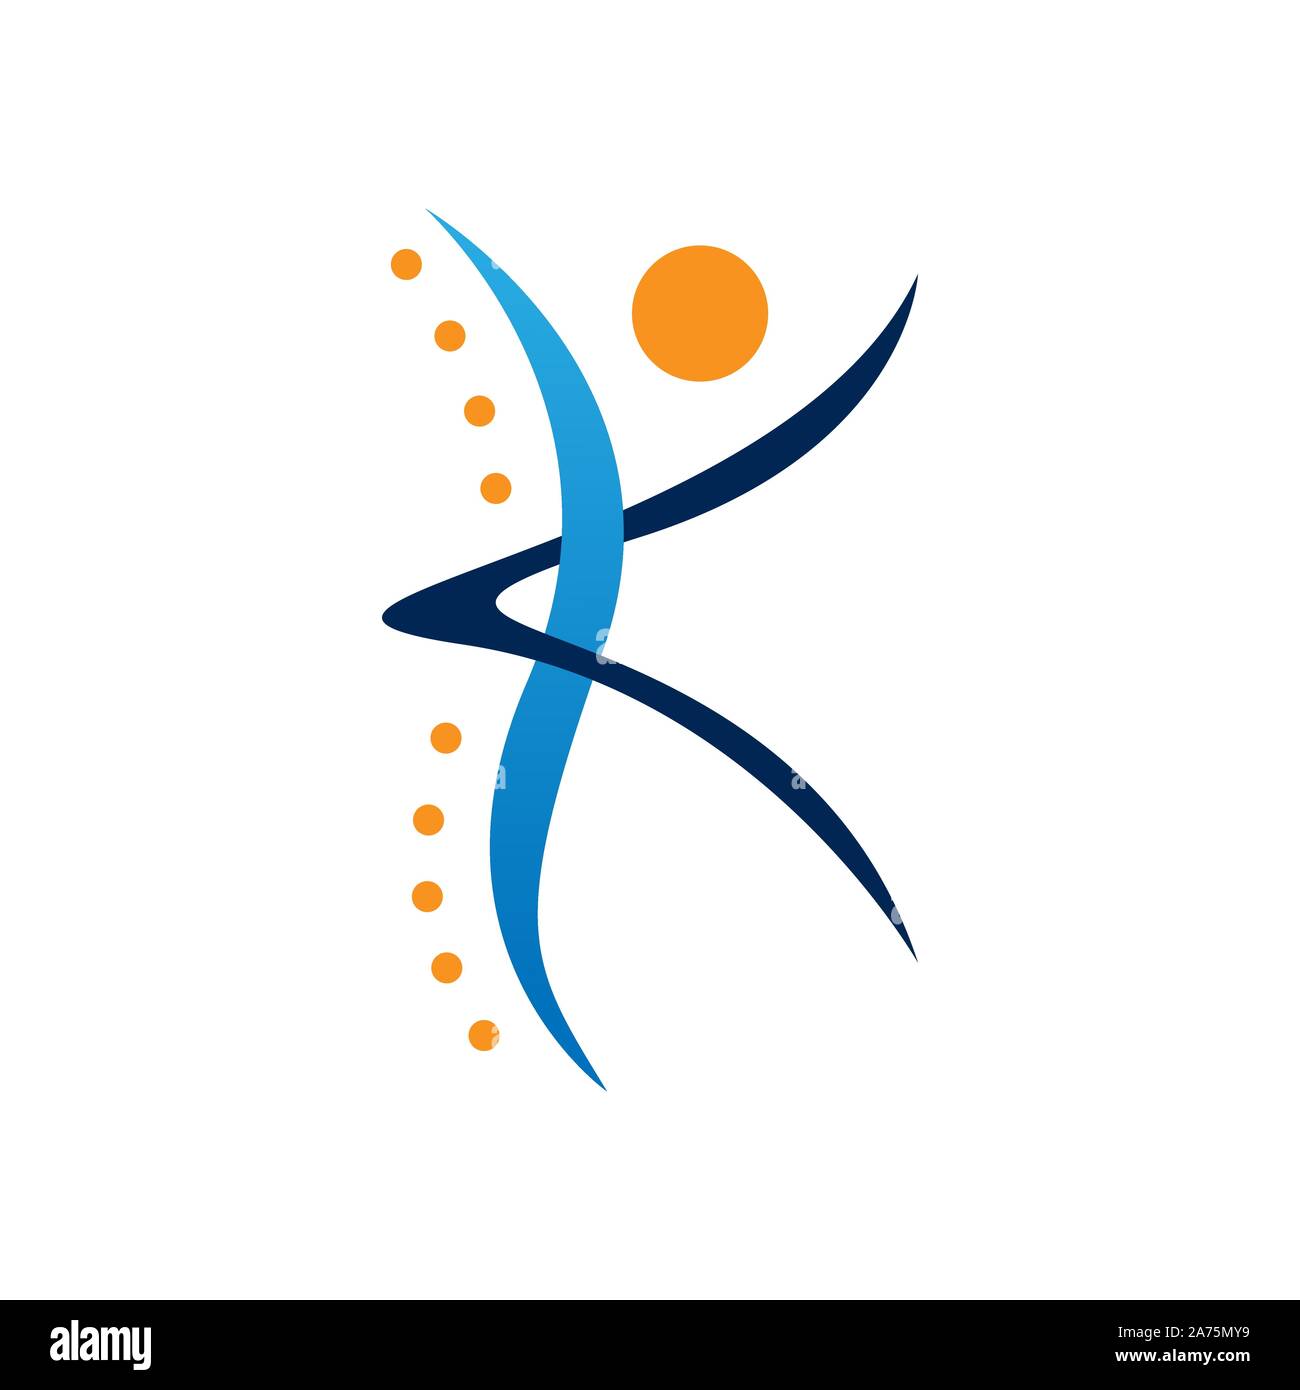 Kreative Medizin Chiropraktik Konzept Logo Design Vector Image. Chiropraktik Physiotherapie Konzept Logo Design Vector Image Stock Vektor